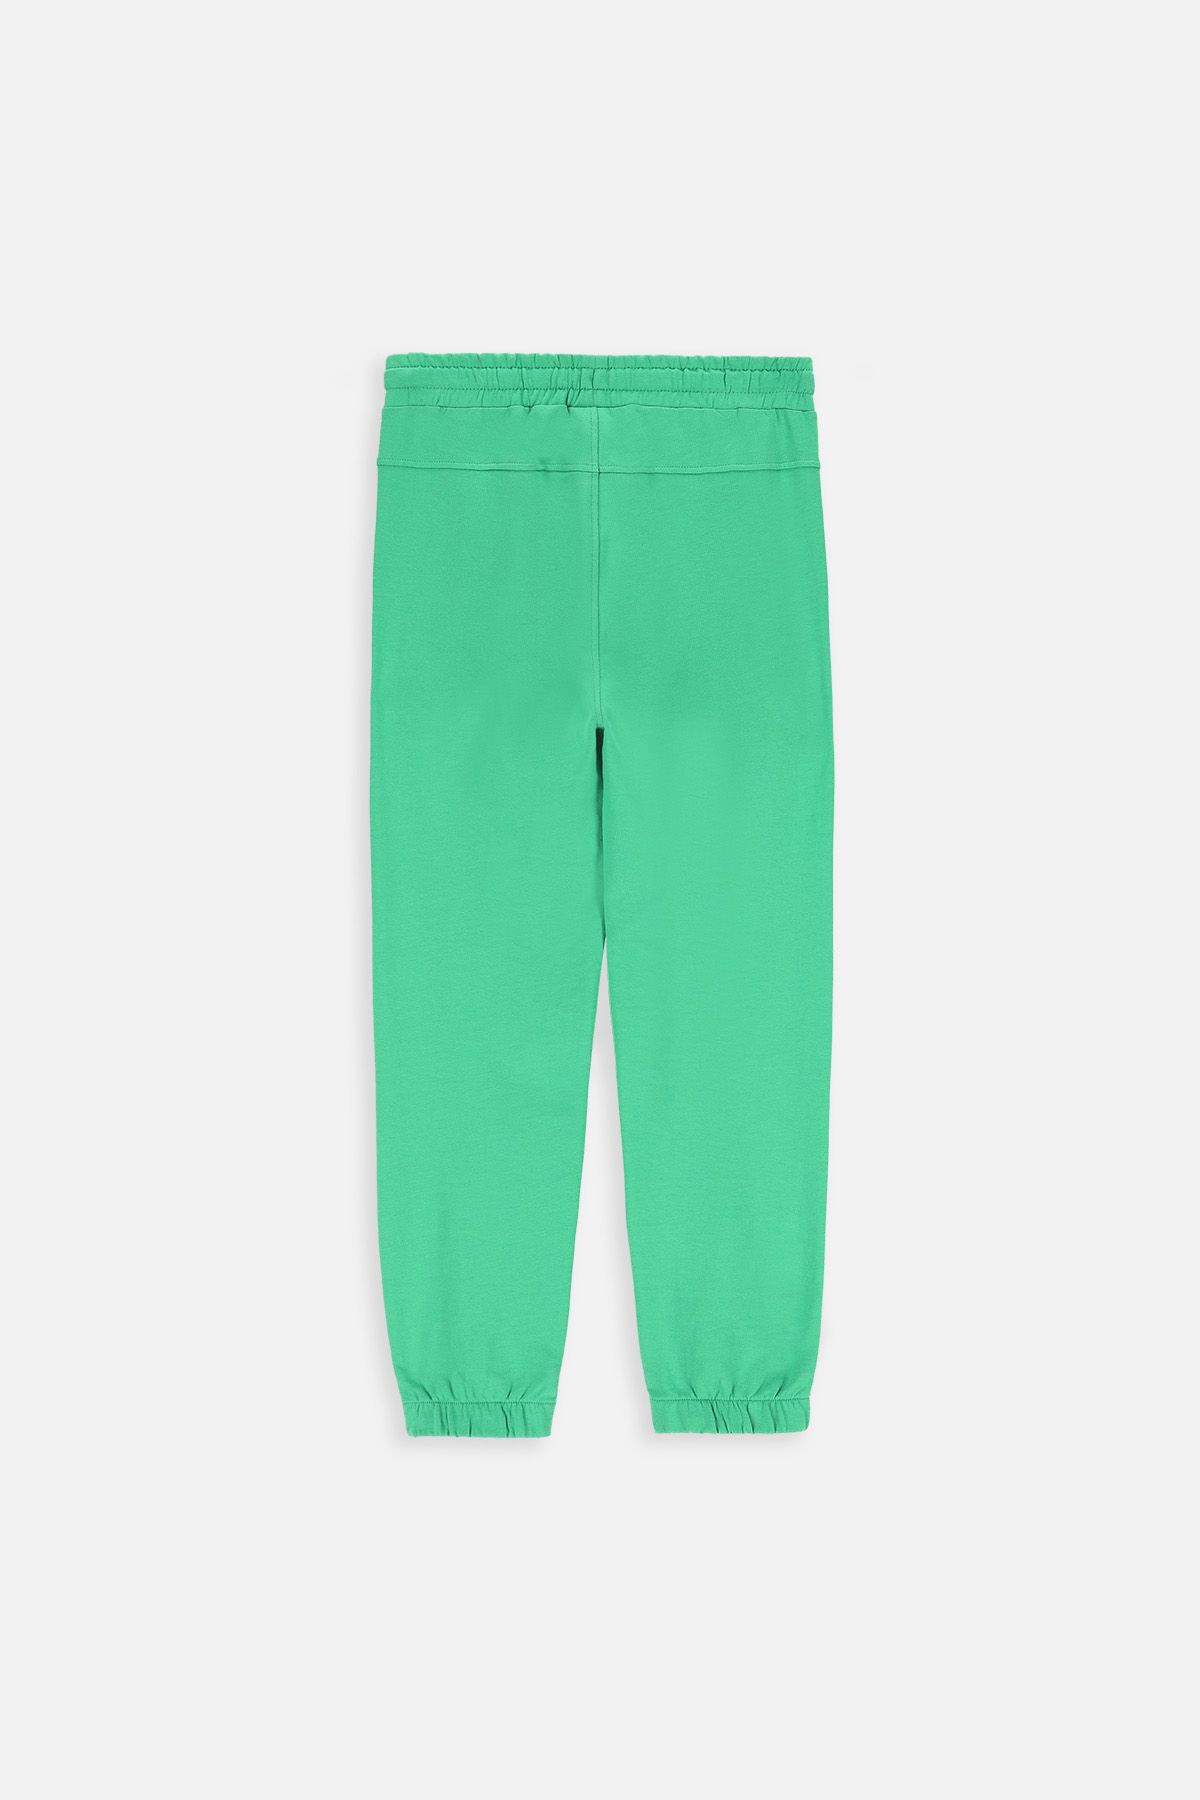 Spodnie dresowe zielone z kieszeniami o fasonie SLIM 2220475